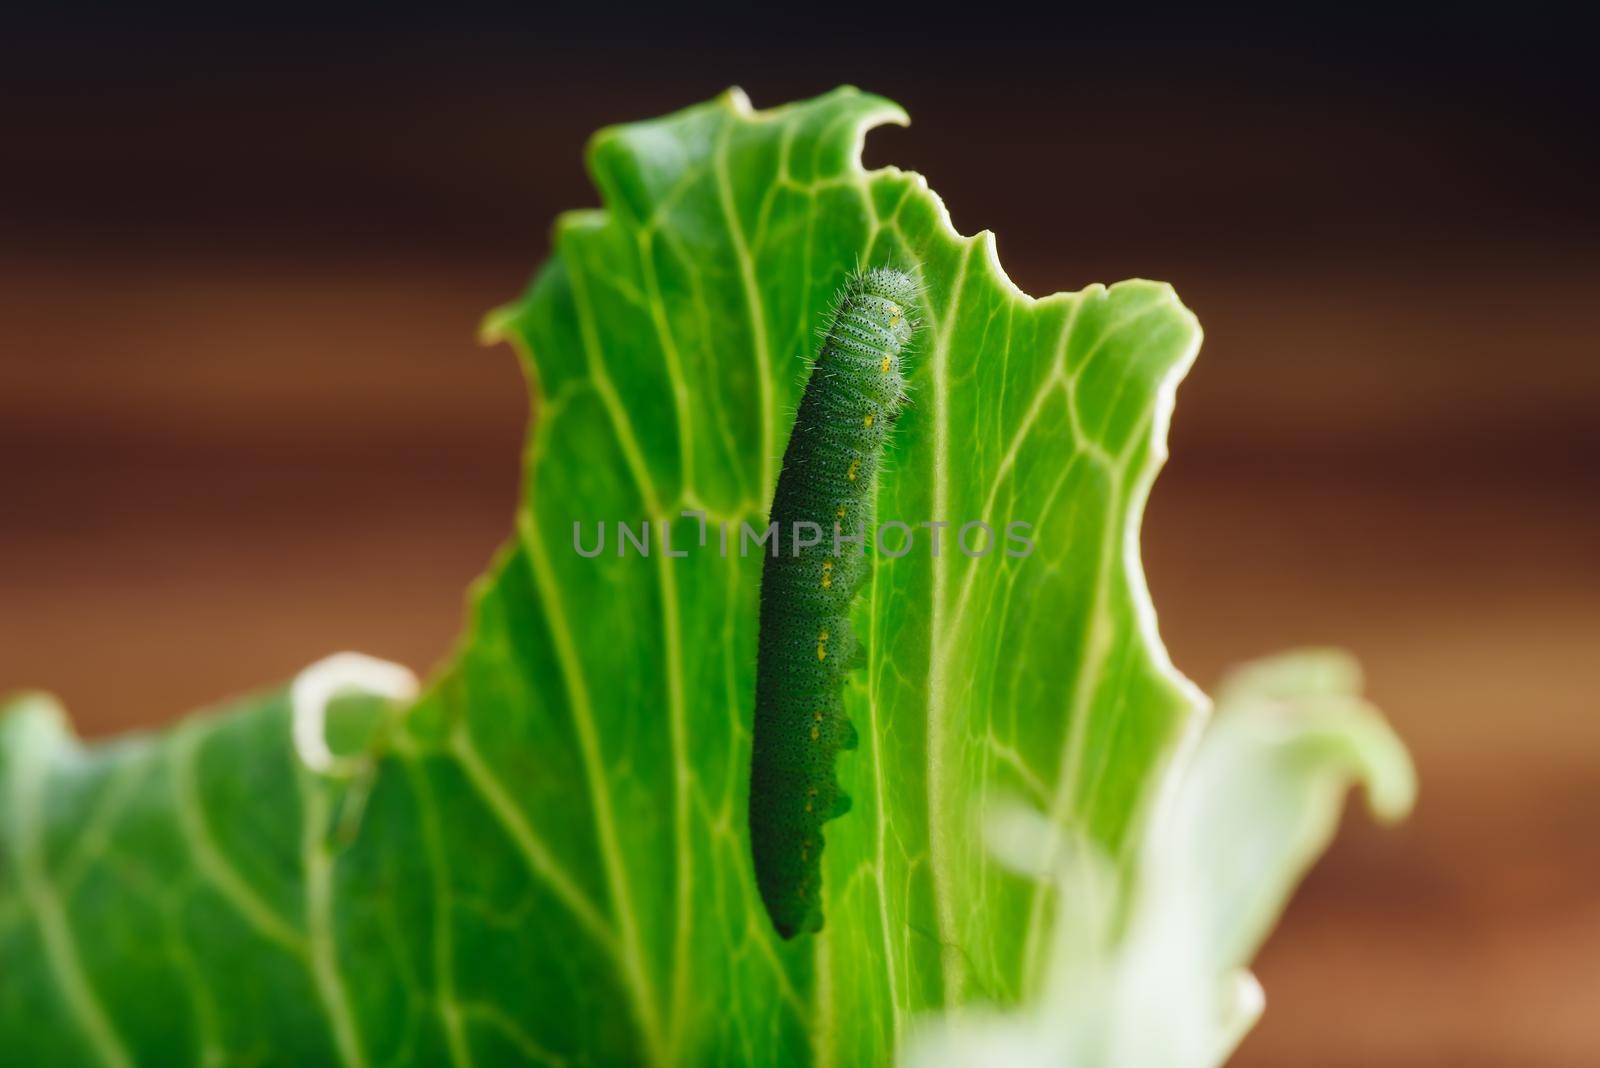 Green Caterpillar Crawling on a Leaf by Seva_blsv